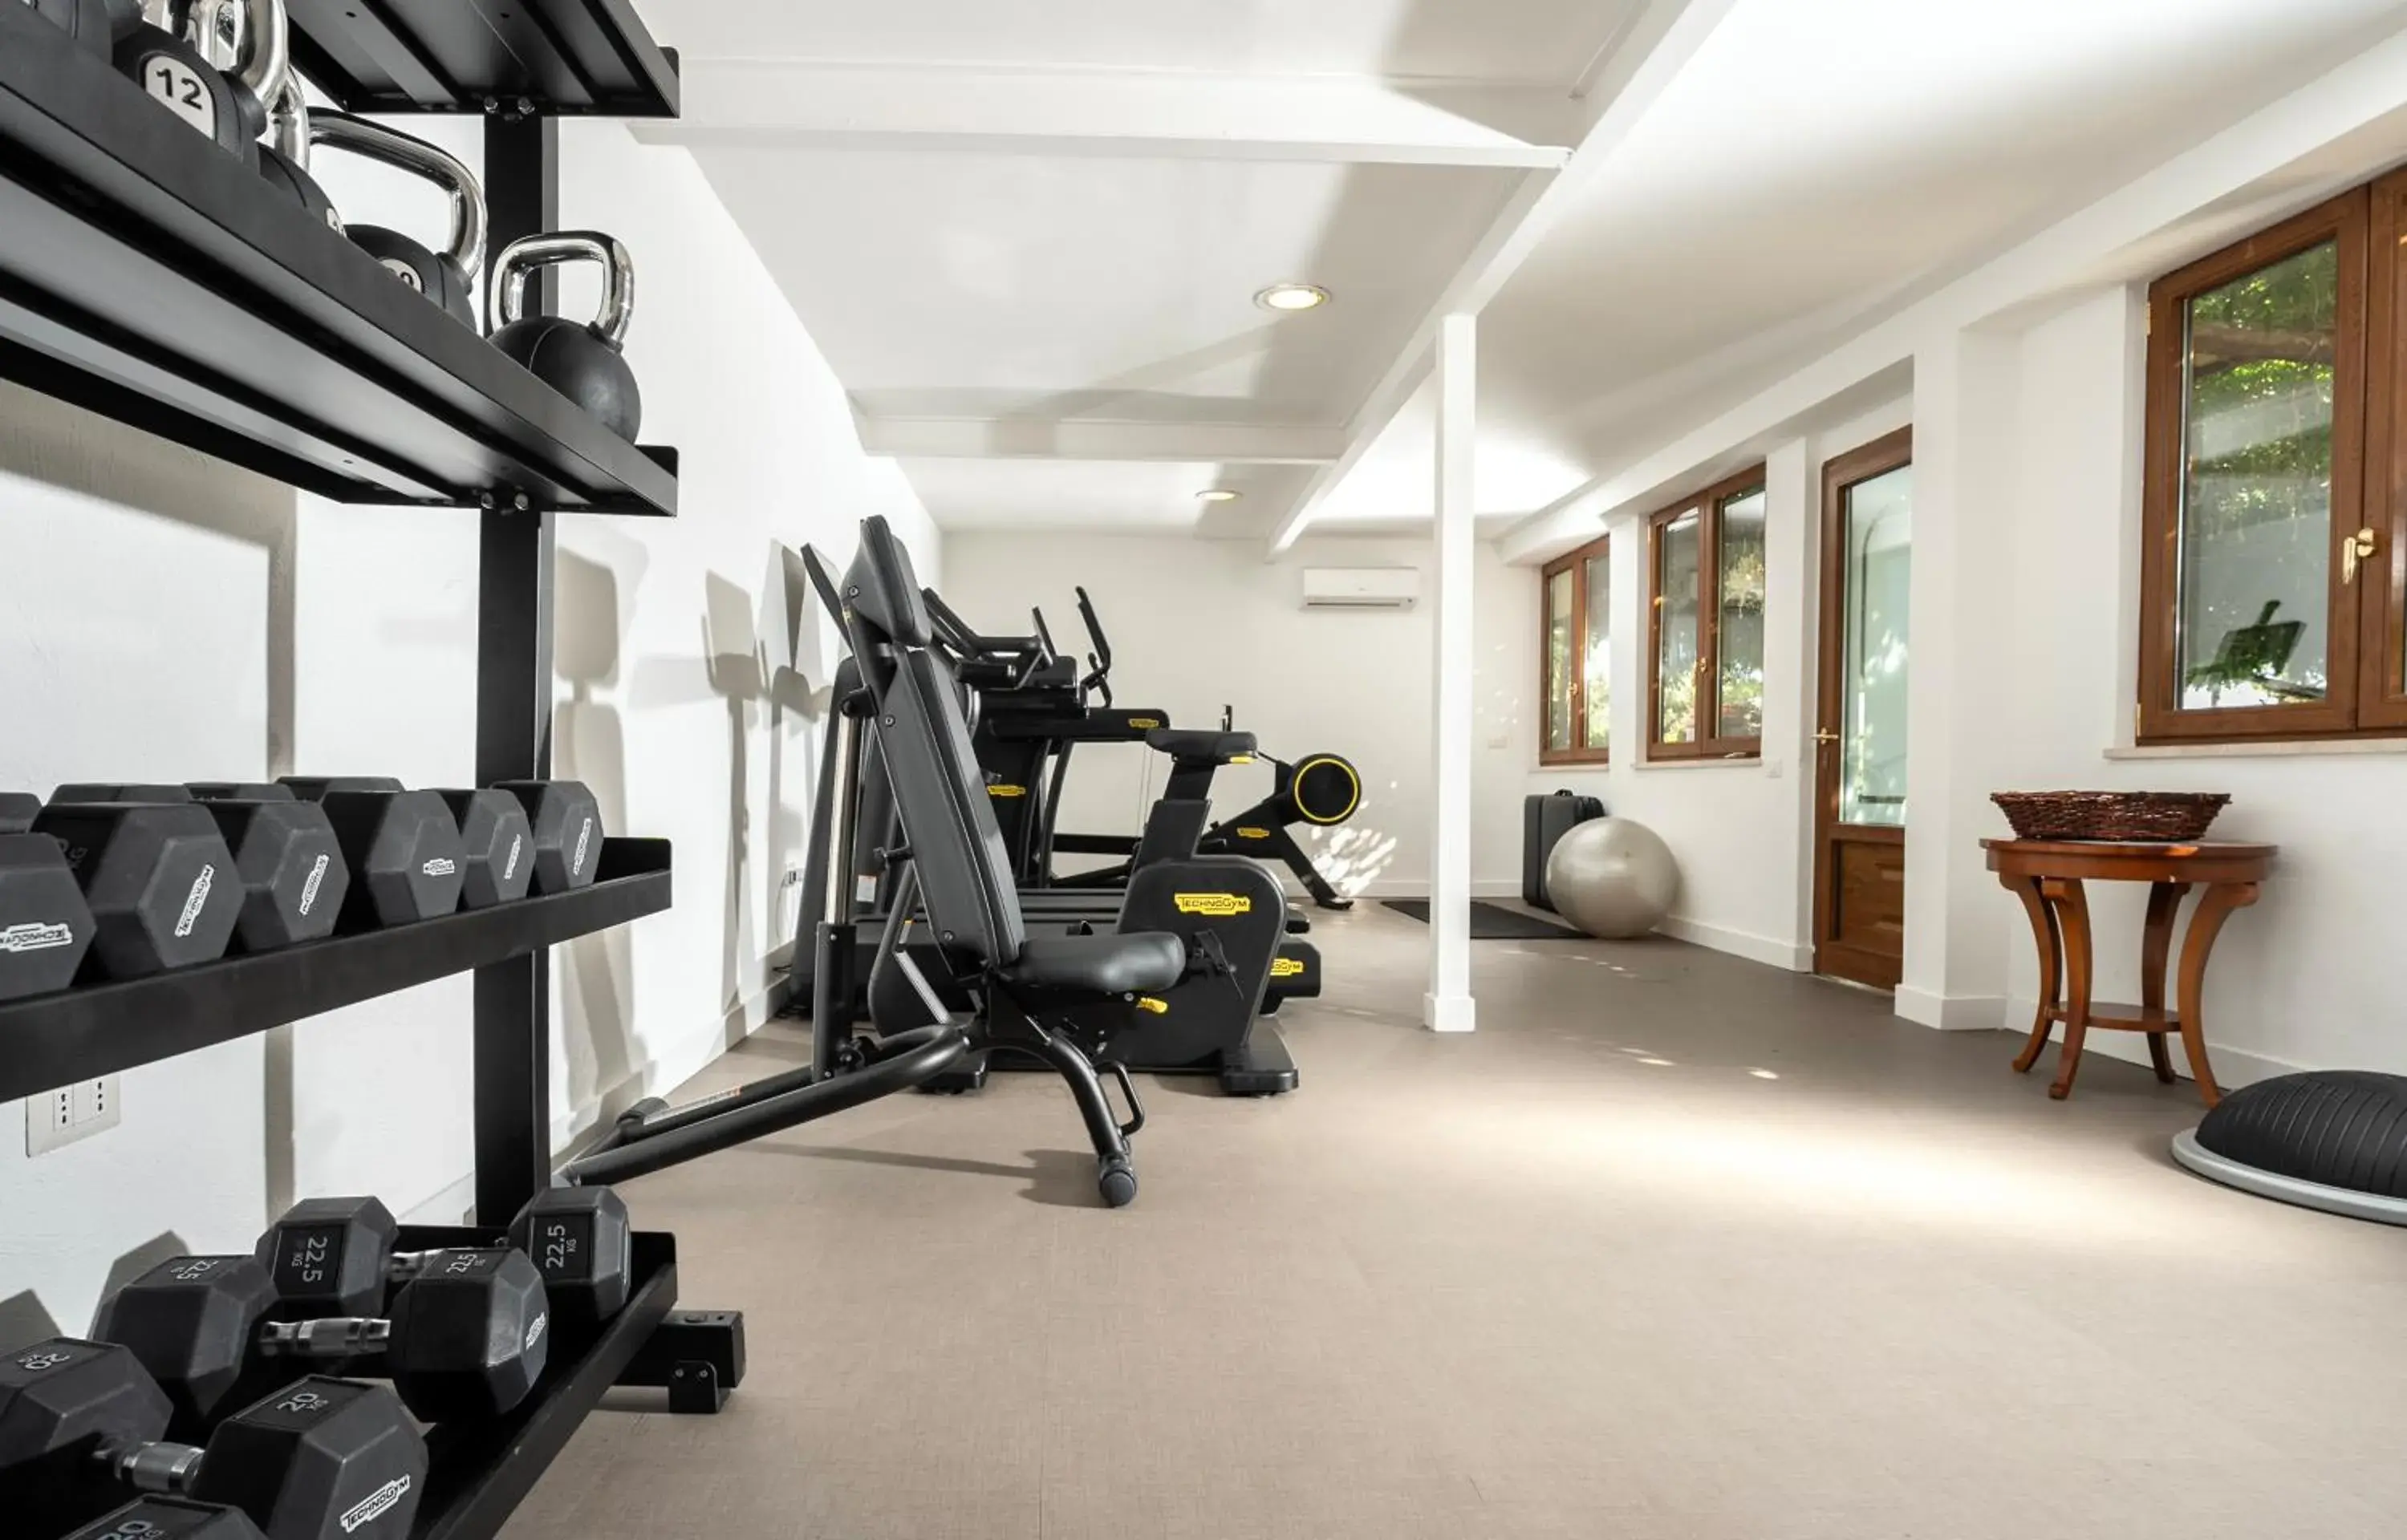 Fitness centre/facilities, Fitness Center/Facilities in Hotel Grand Vesuvio